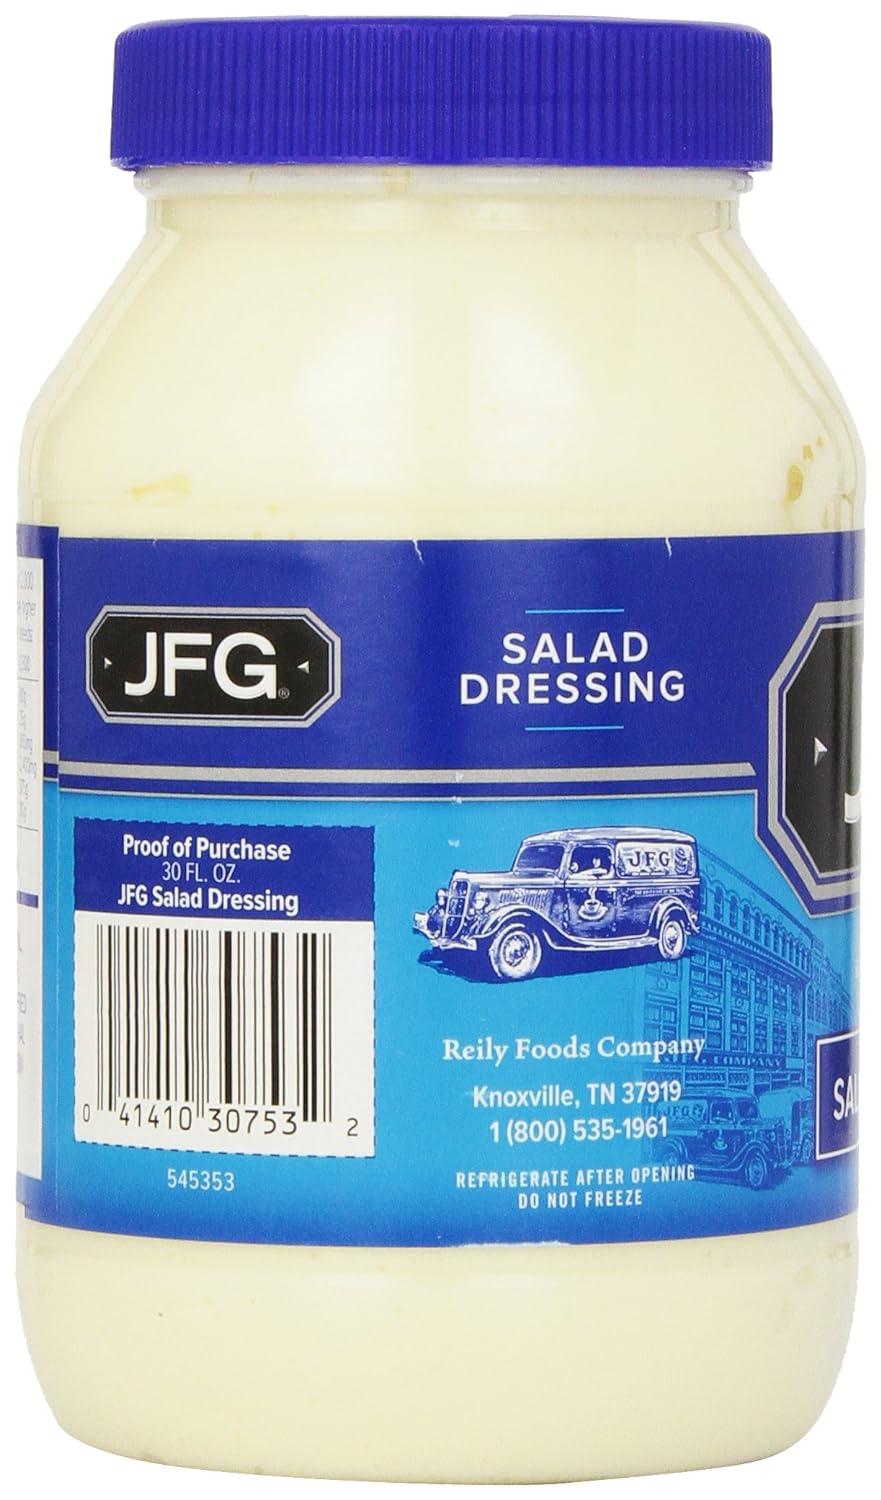 Salad Dressing Carafe Labels - Set of 8